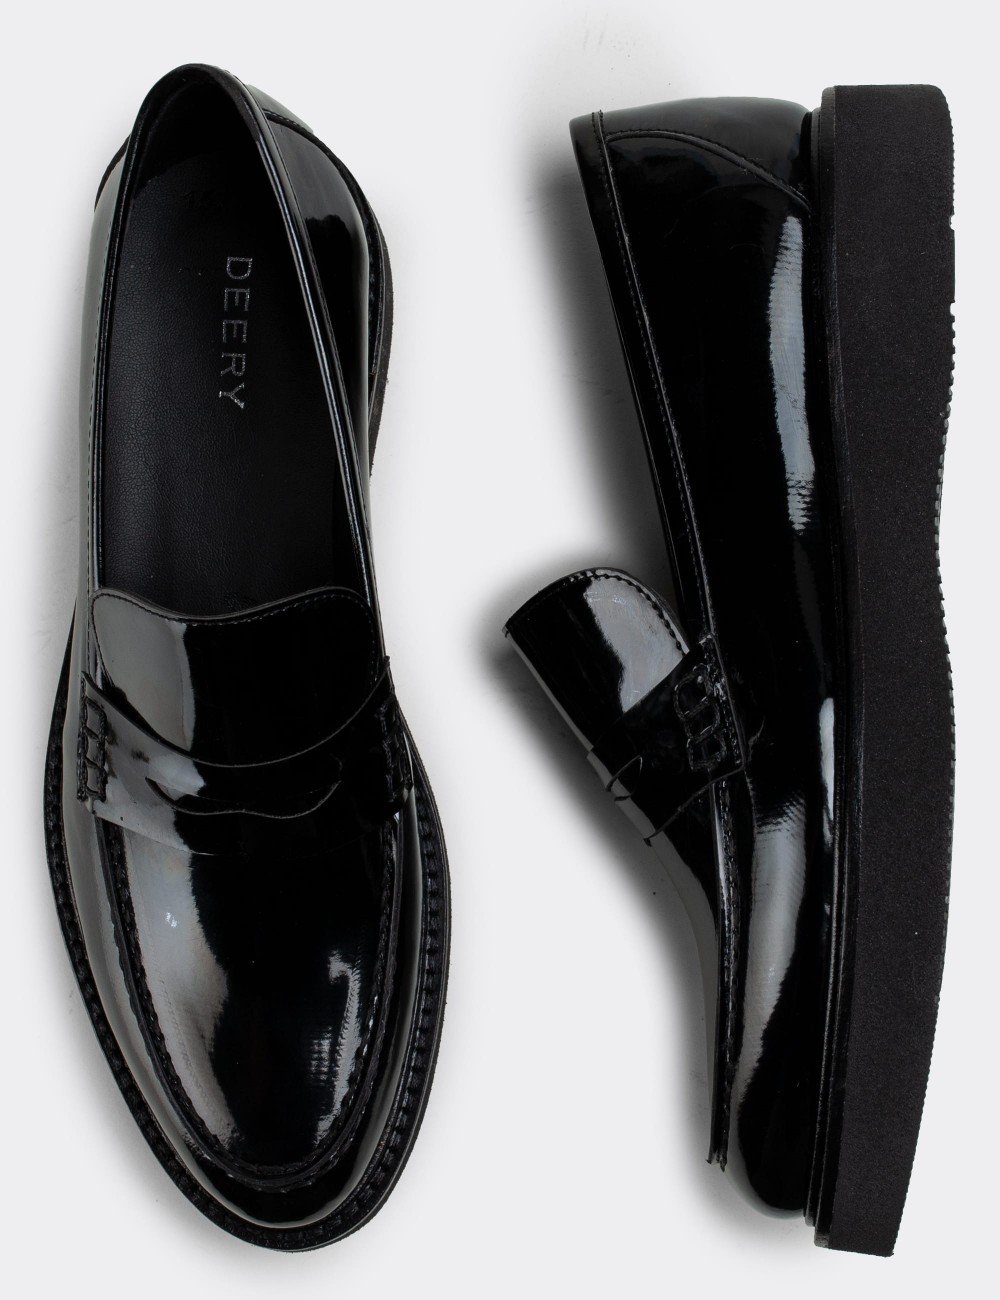 Black Patent Loafers - 01574ZSYHE03